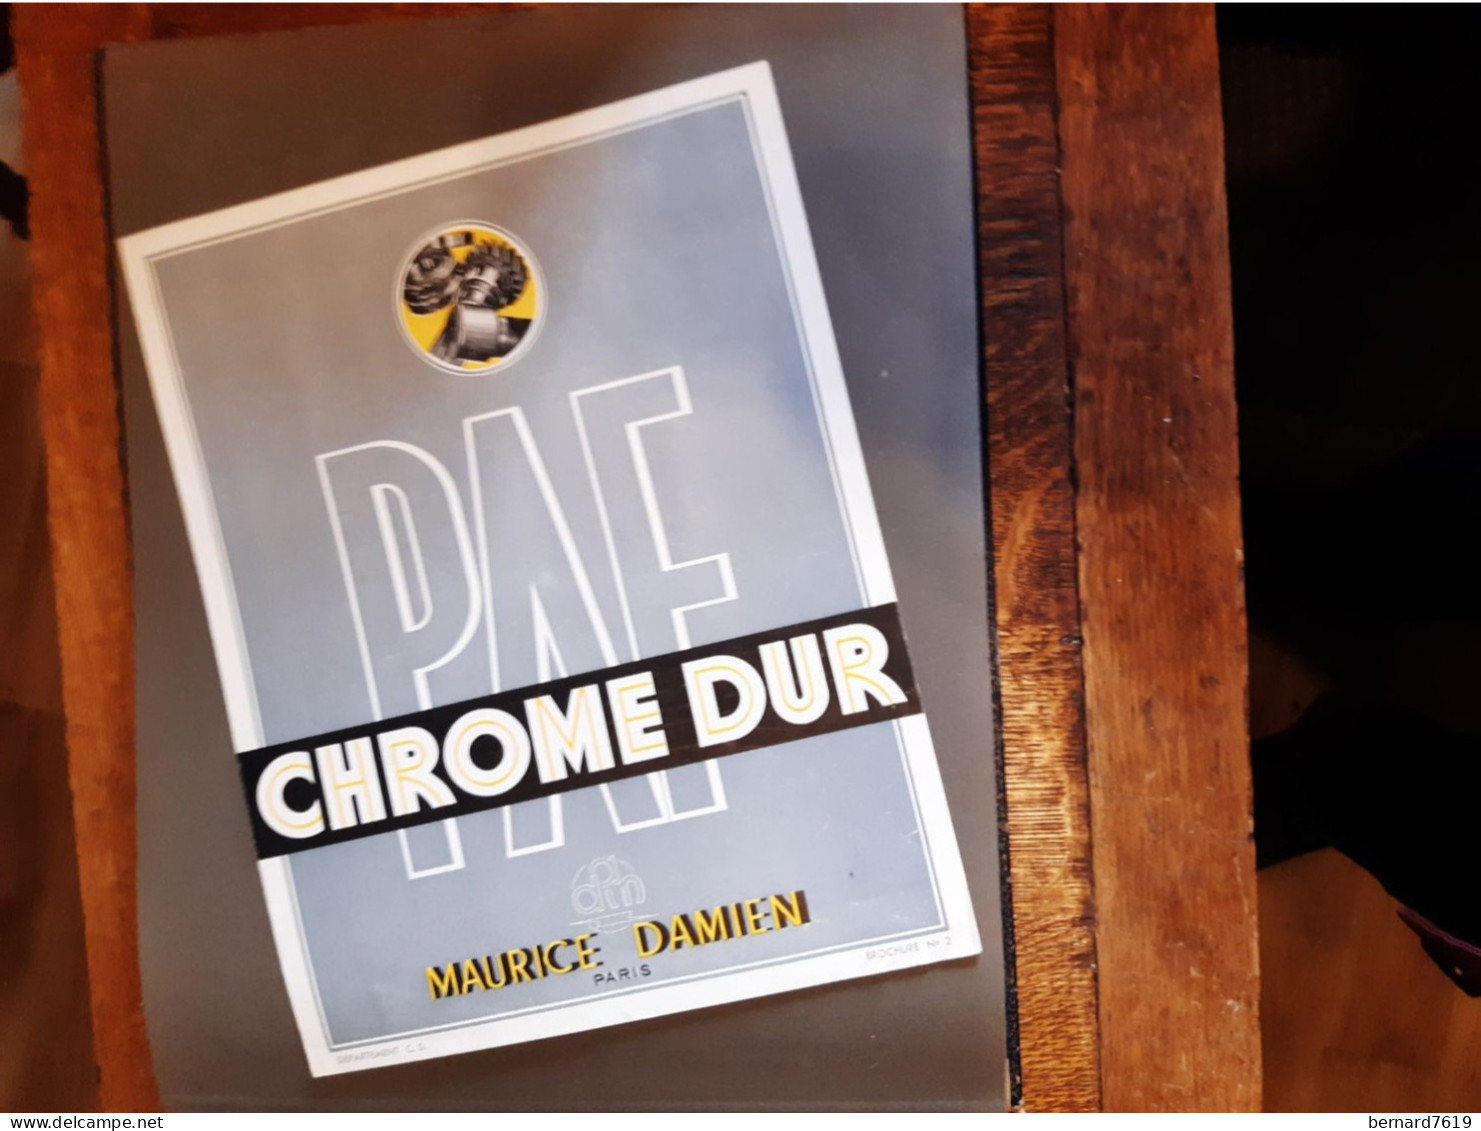 Publicite Annee Vers  1950 - Chrome Dur  Maurice Damien Paris - Byrrh - La Telephonie Francaise Paris 75011 - Reclame